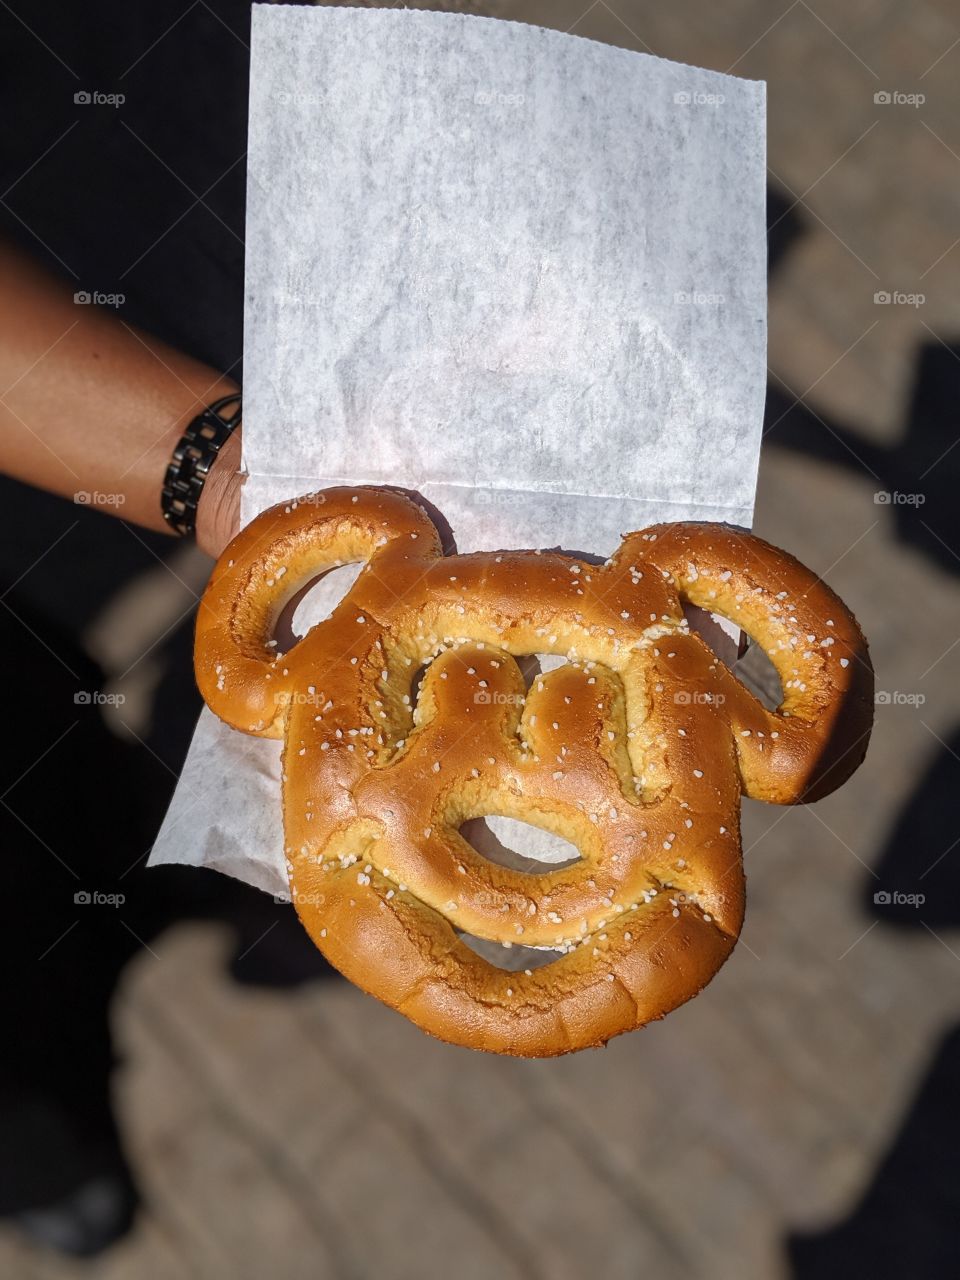 pretzel Mickey mouse